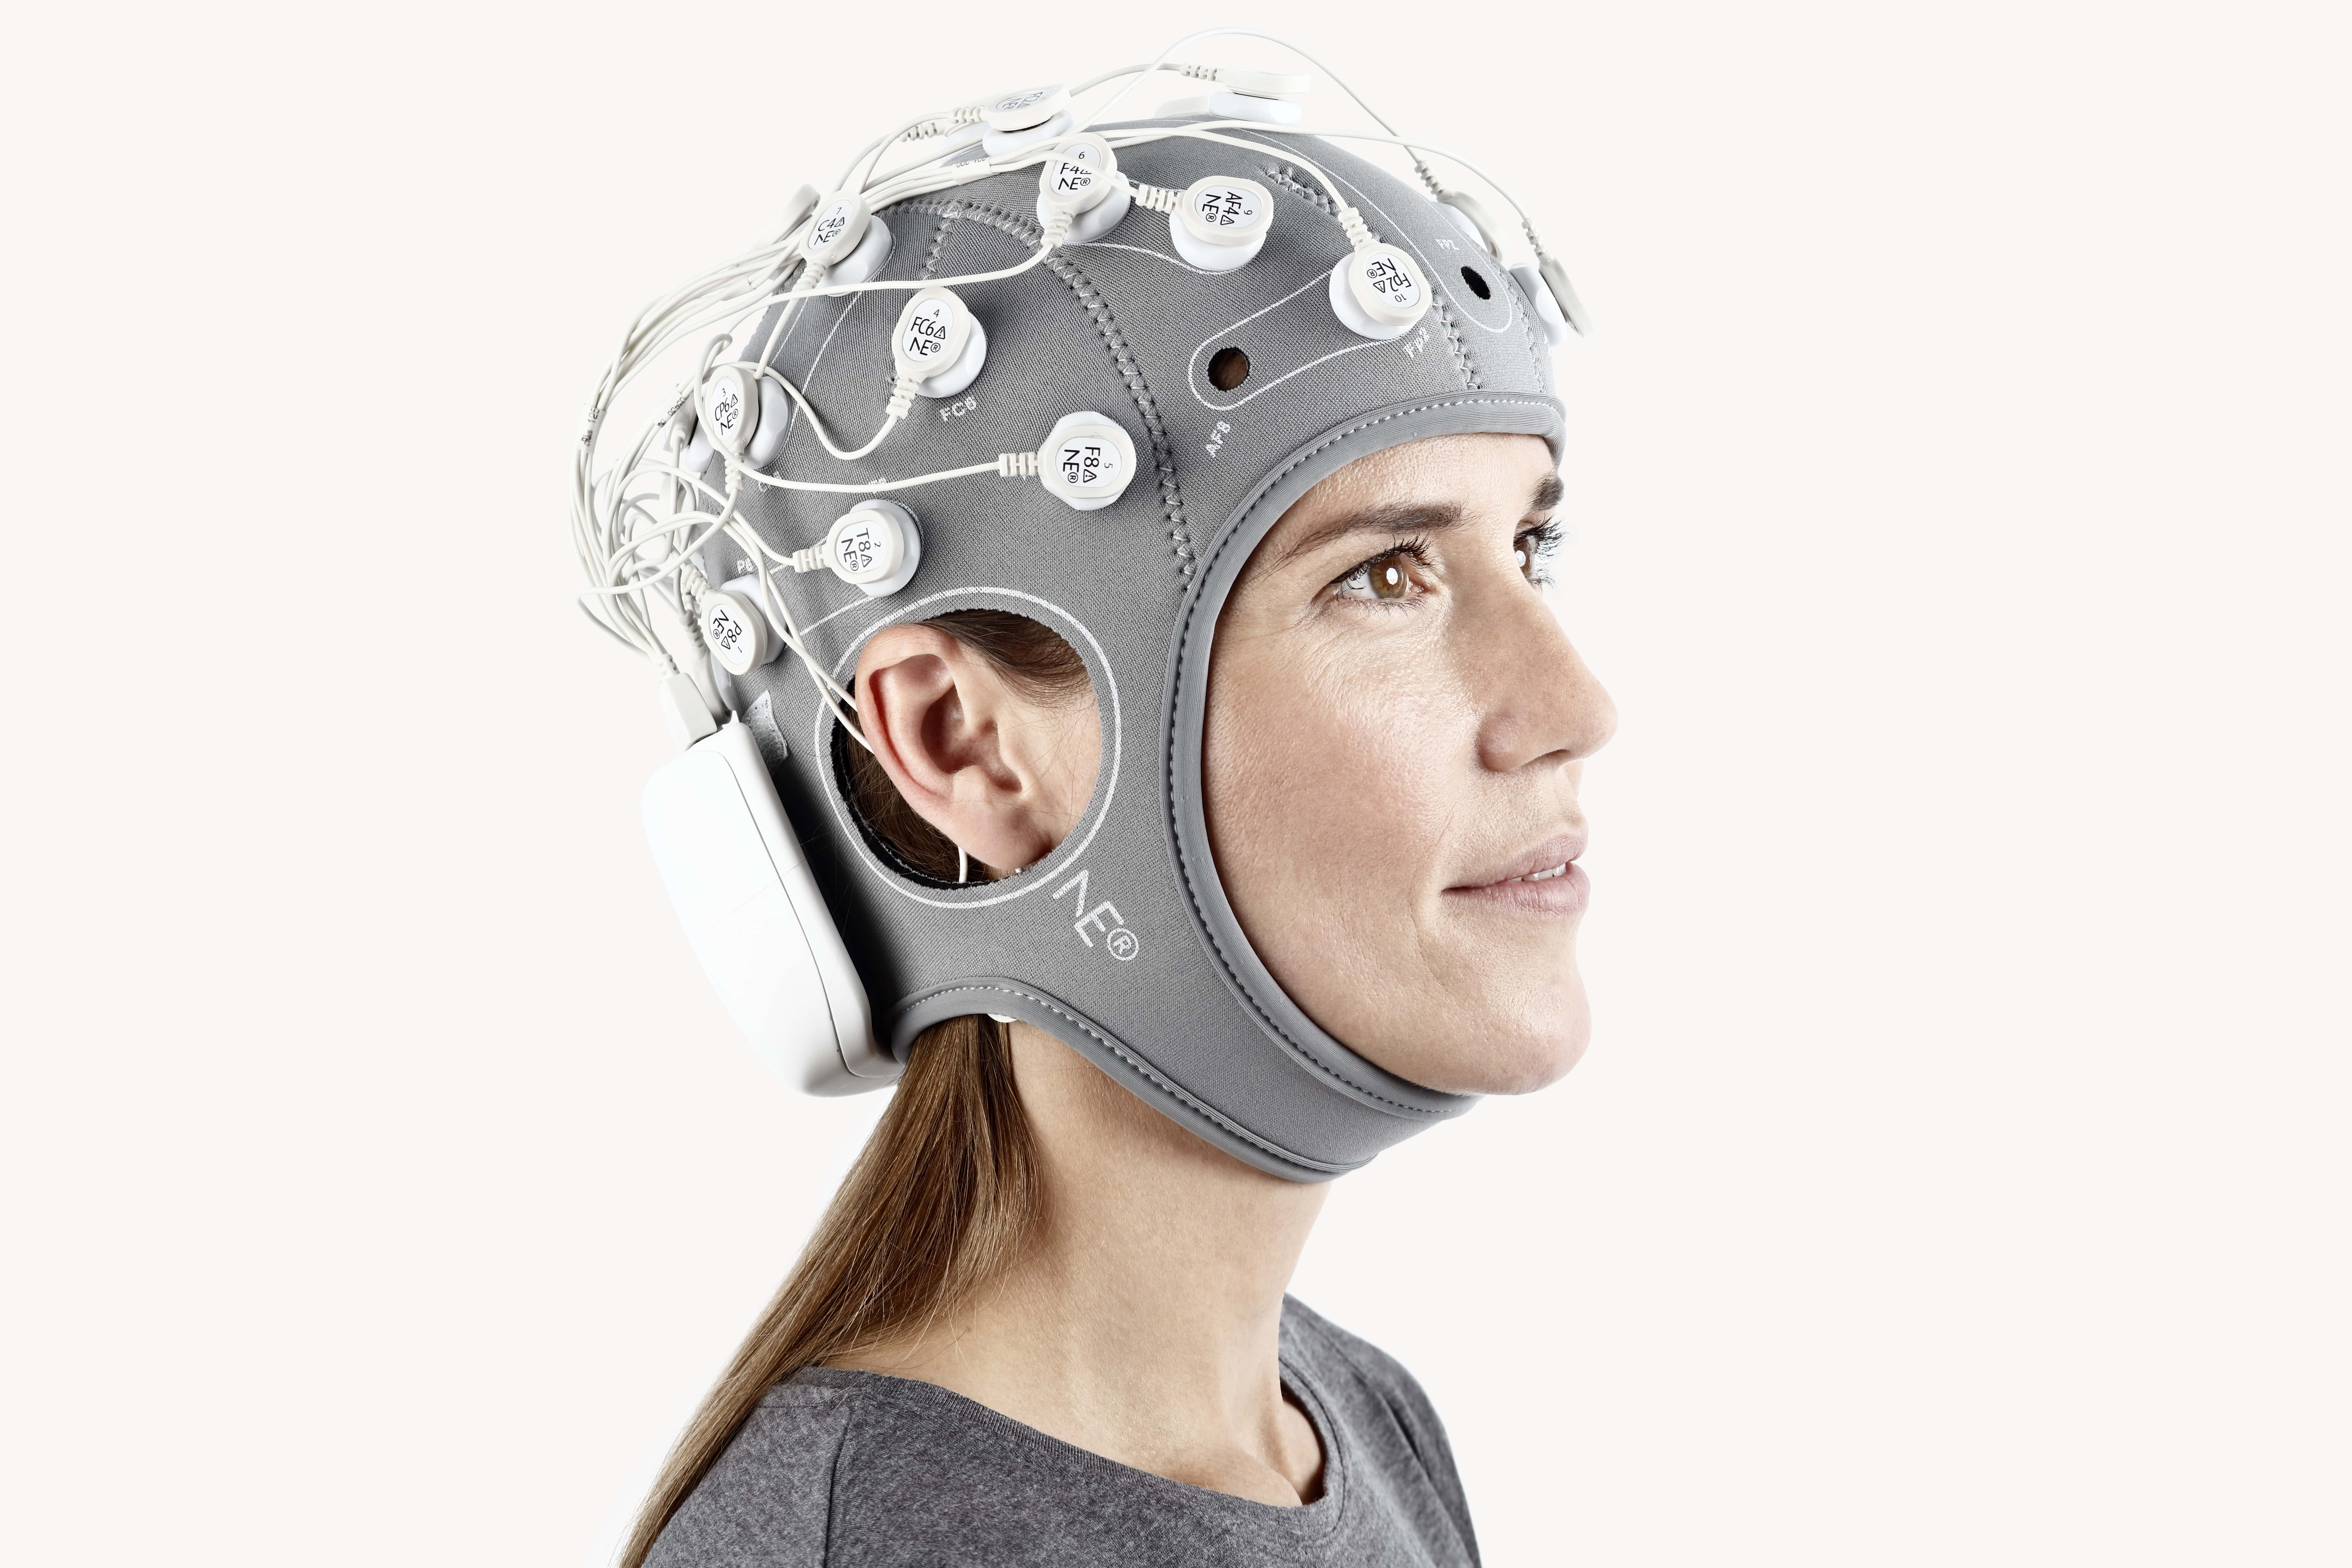 EEG/tES closed Loop stimulation